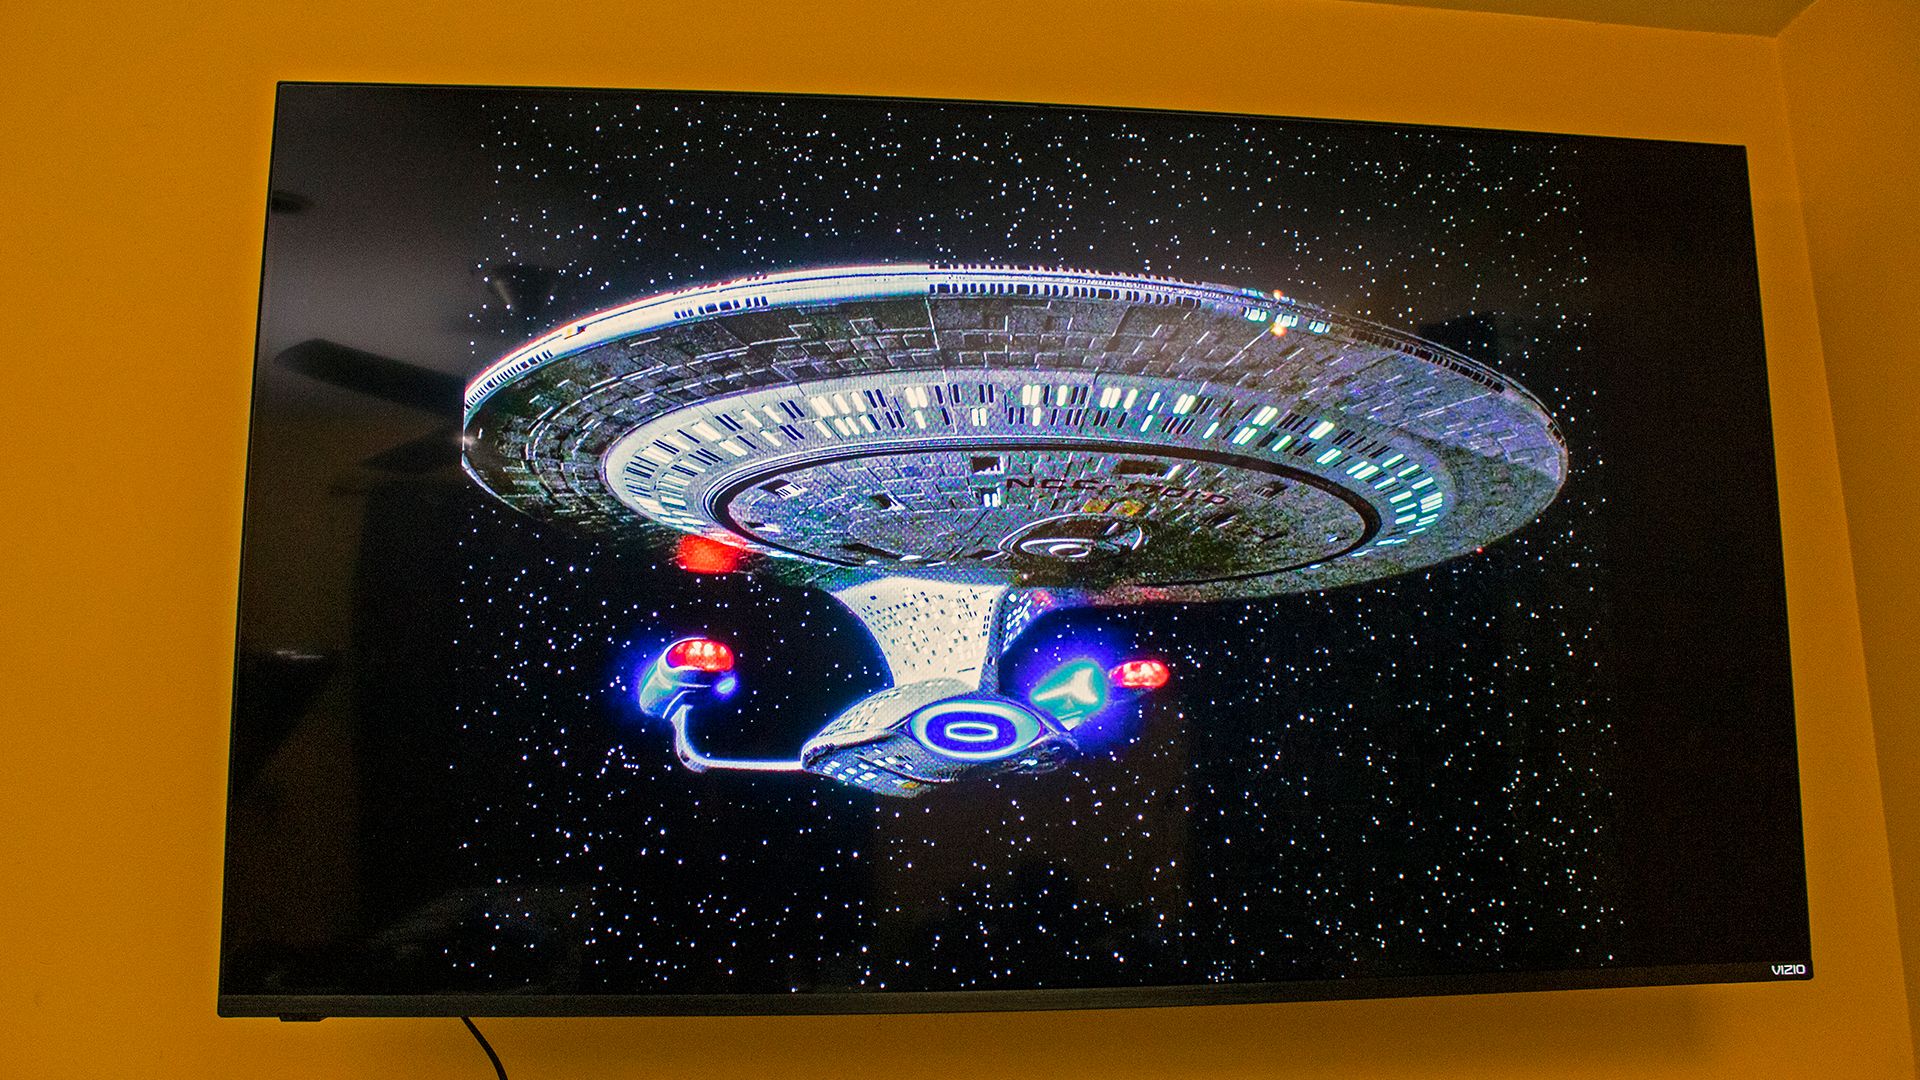 An episode of 'Star Trek: TNG' showing the Enterprise-D on a TV